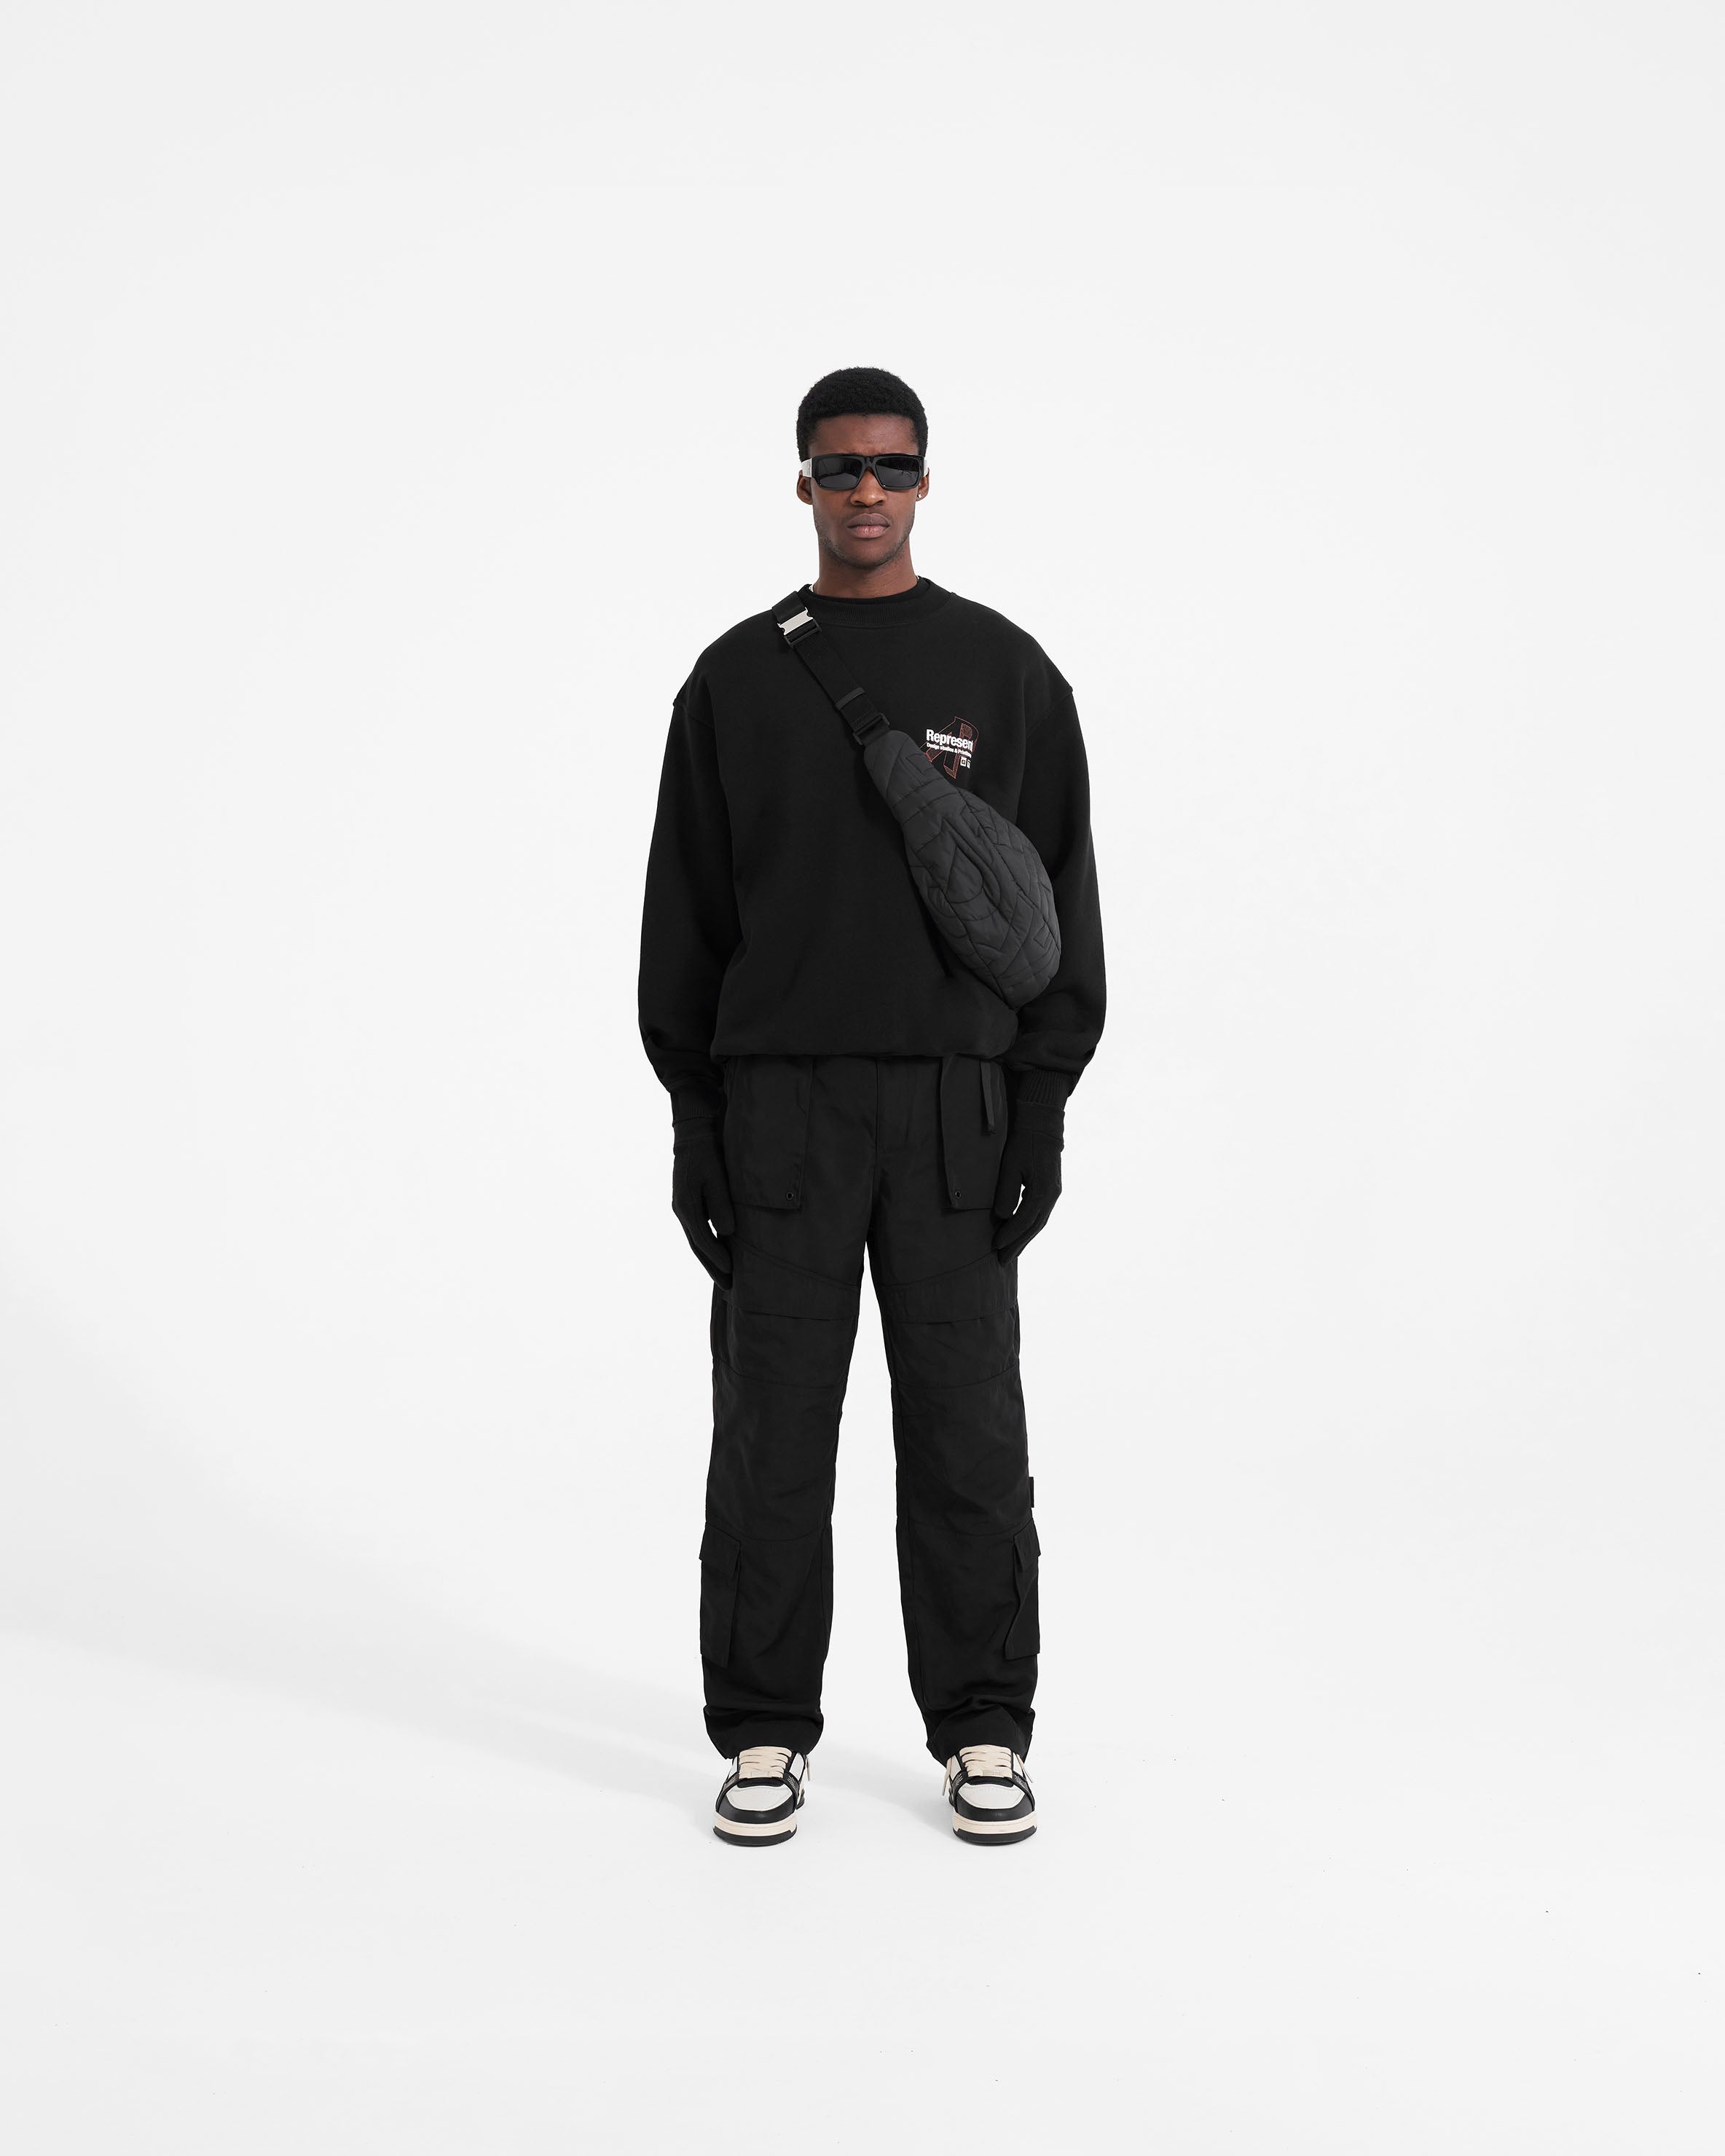 Design Studios Sweater - Black